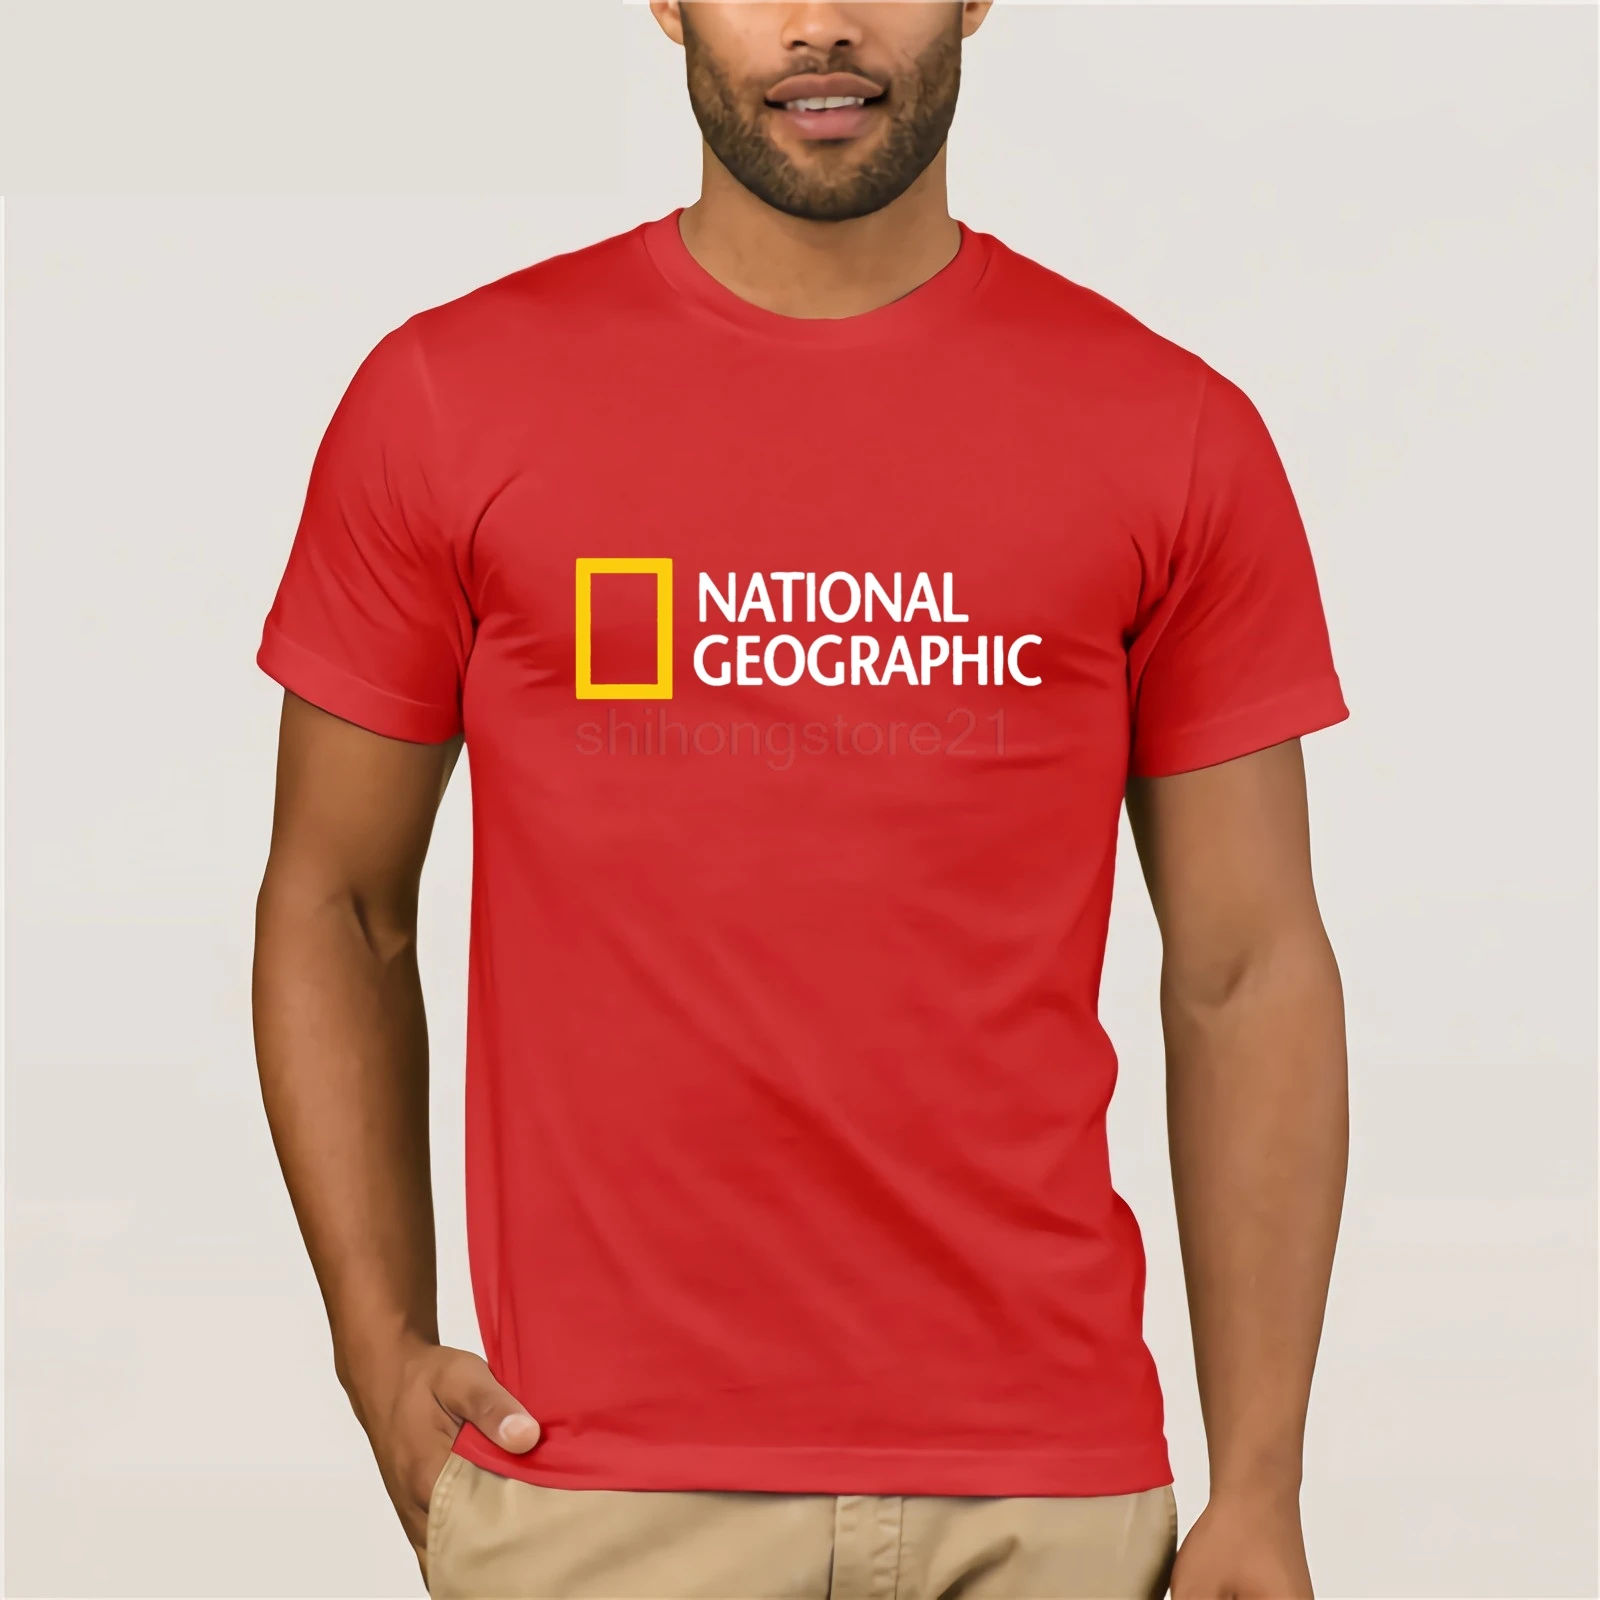 Футболка с логотипом National Geographic футболка одежда короткий рукав новинка S-XXL